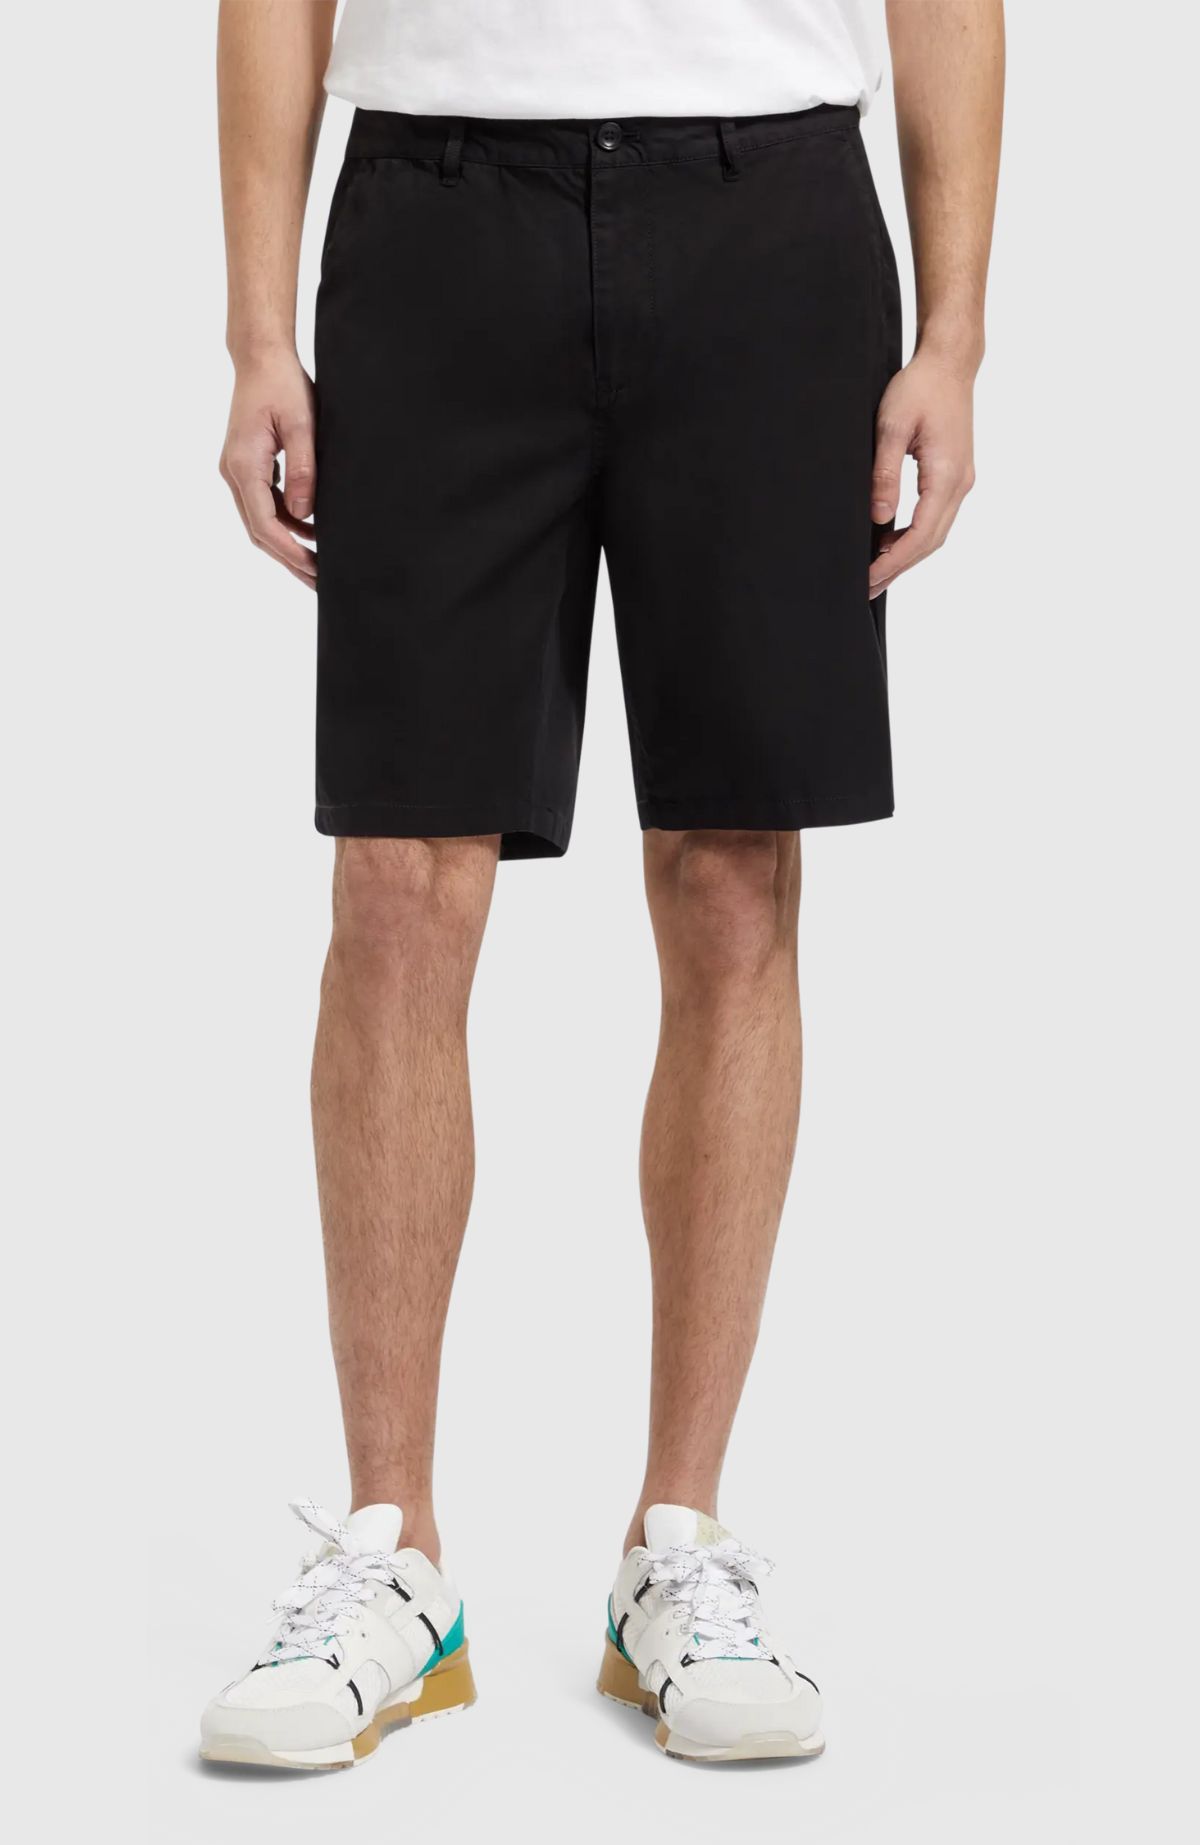 Stuart – Cotton-Blend Twill Shorts